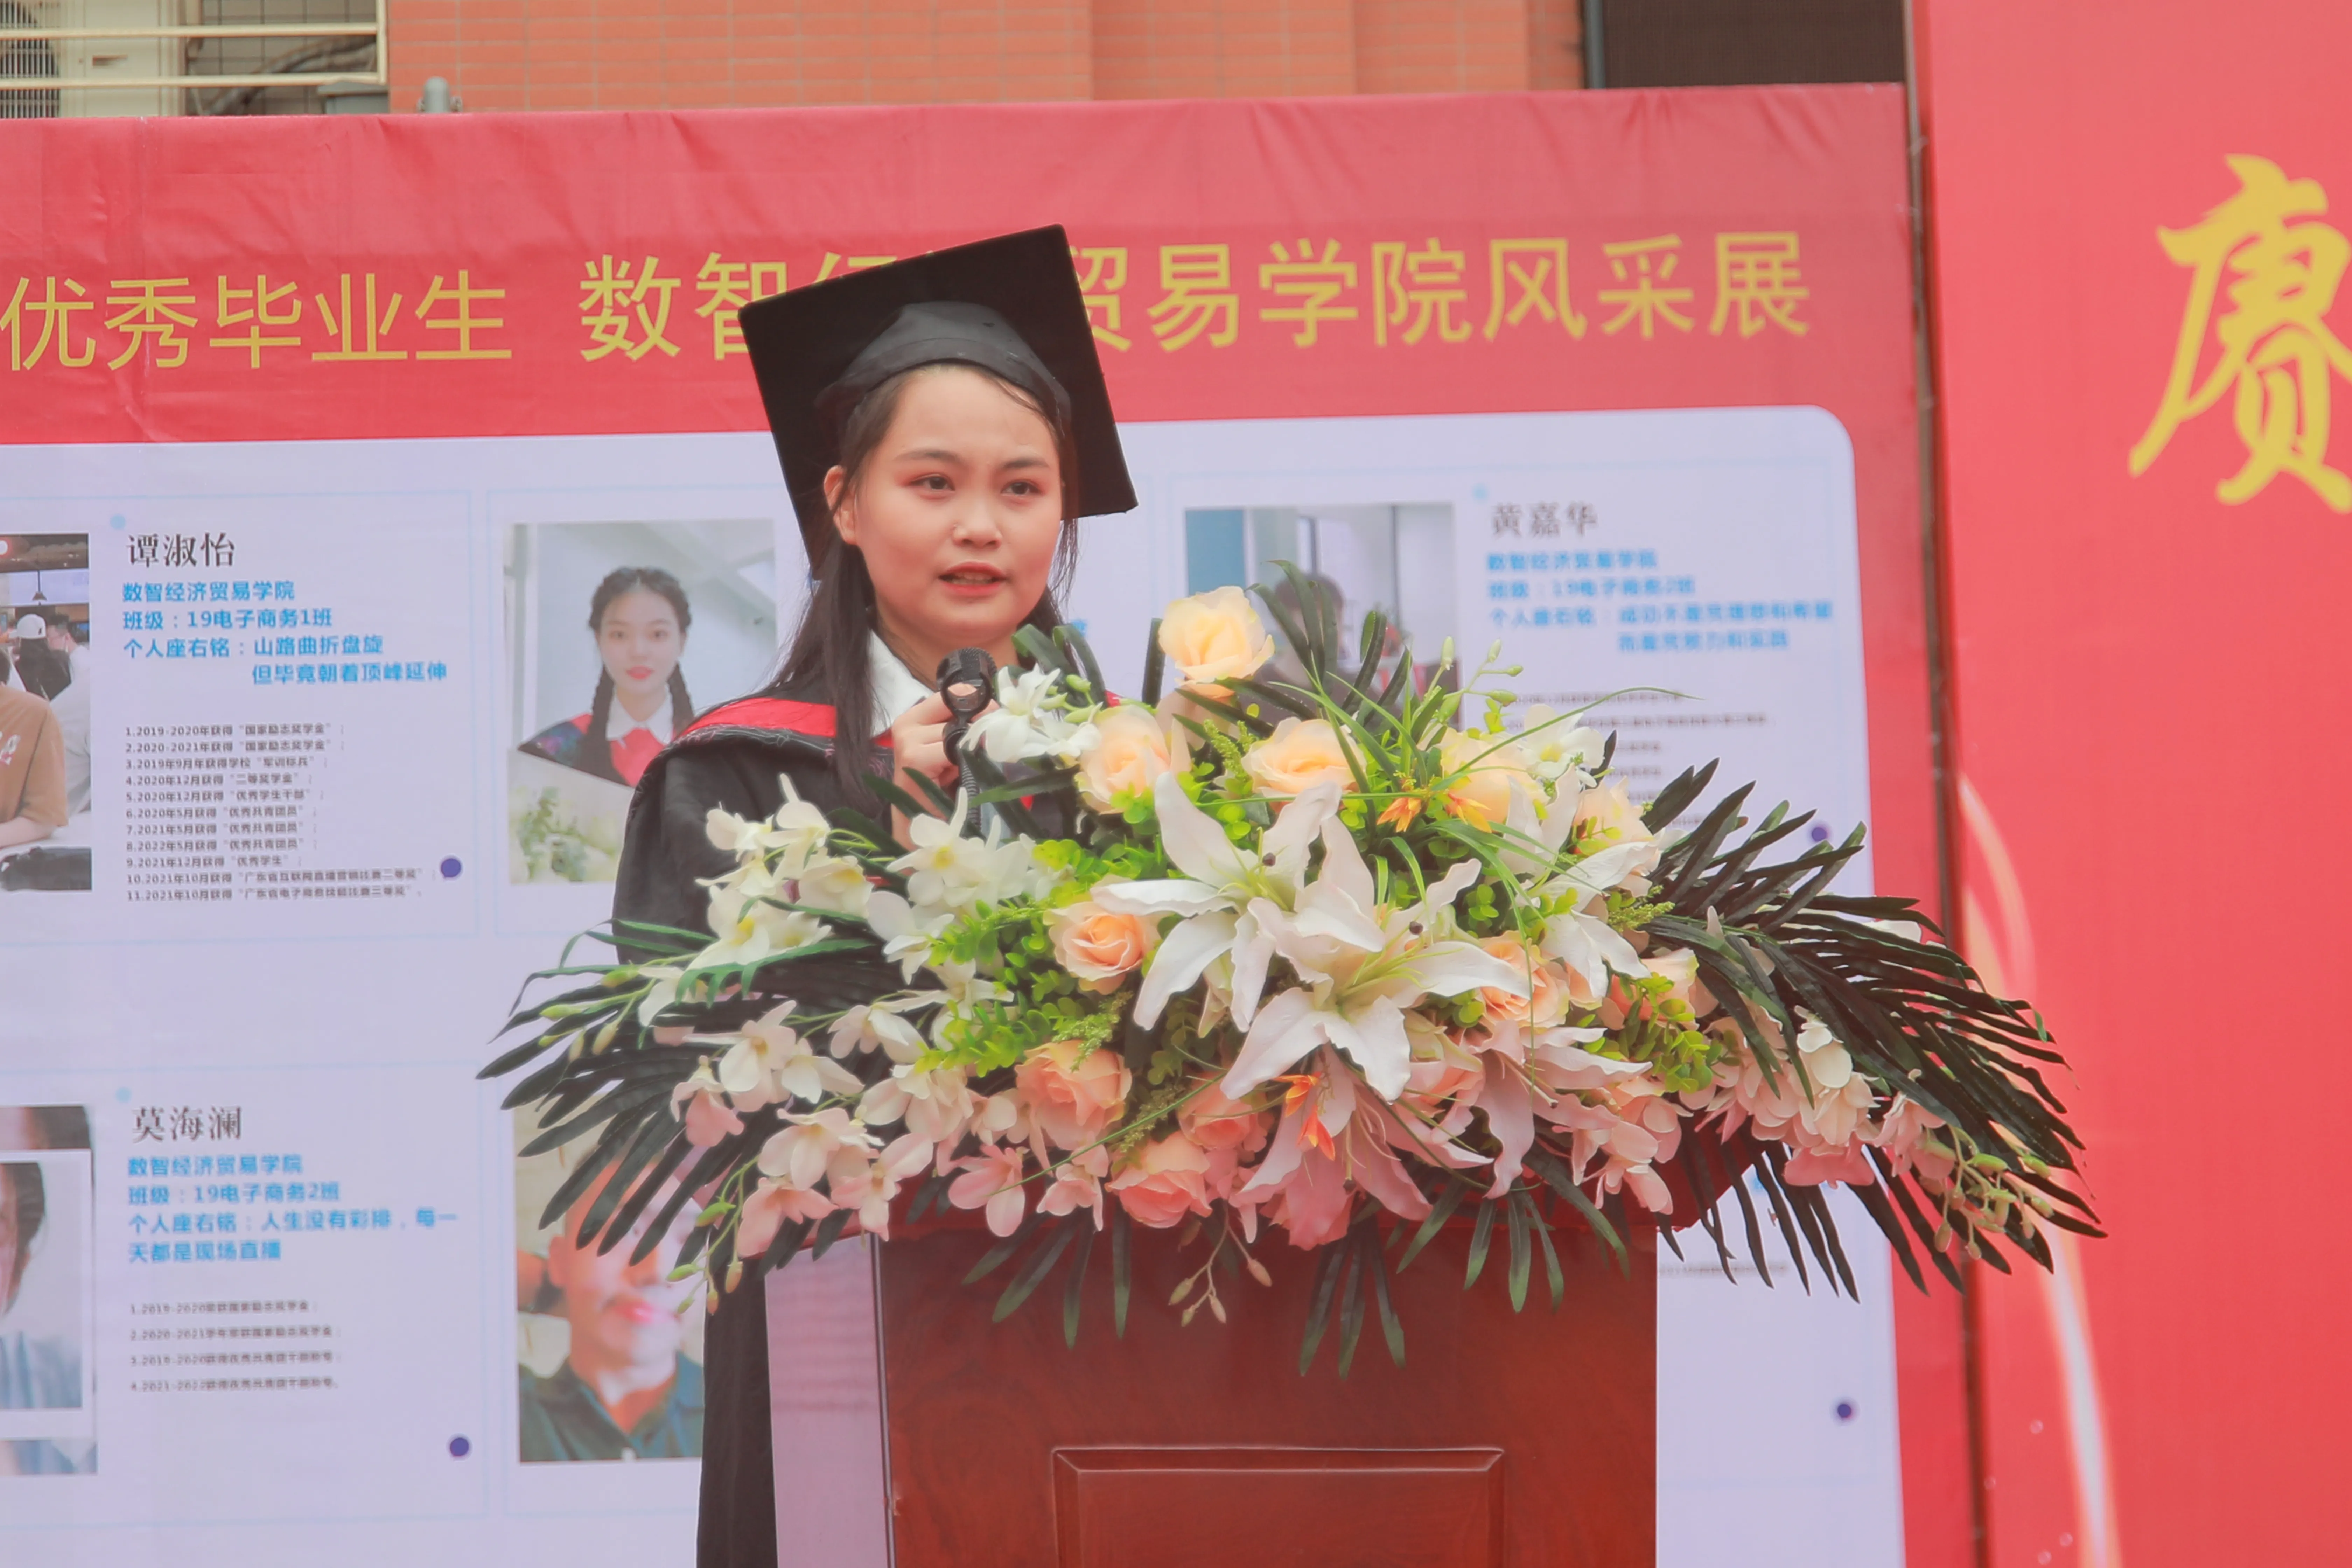 广州华南商贸职业学院举行2022届学生毕业典礼